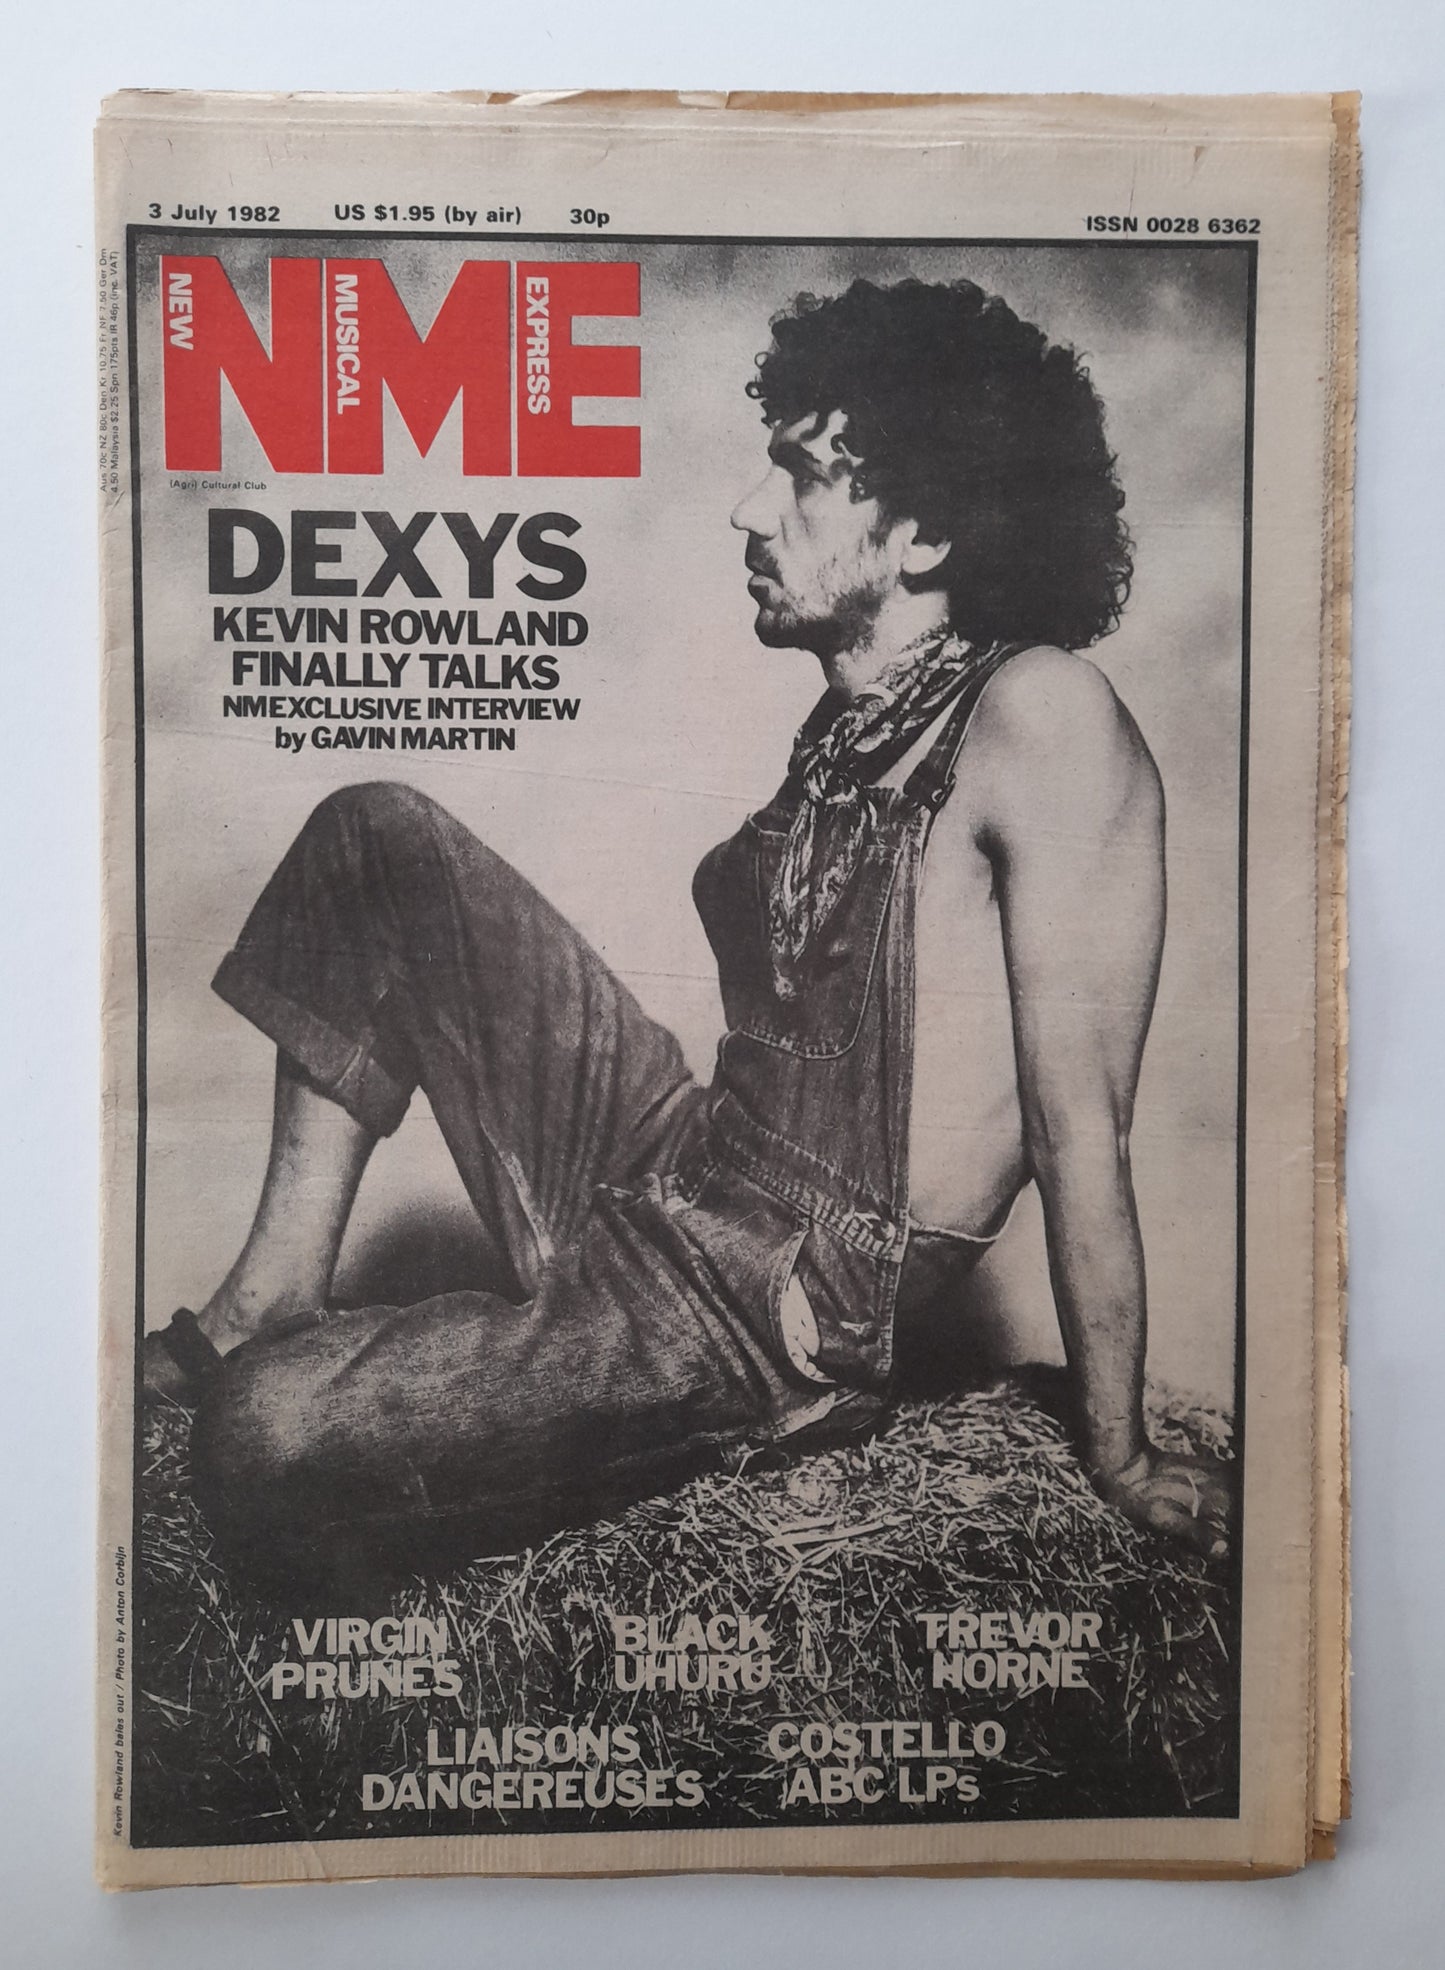 NME Magazine 3 July 1982 Dexys Kevin Rowland, Virgin Prunes, Black Uhuru